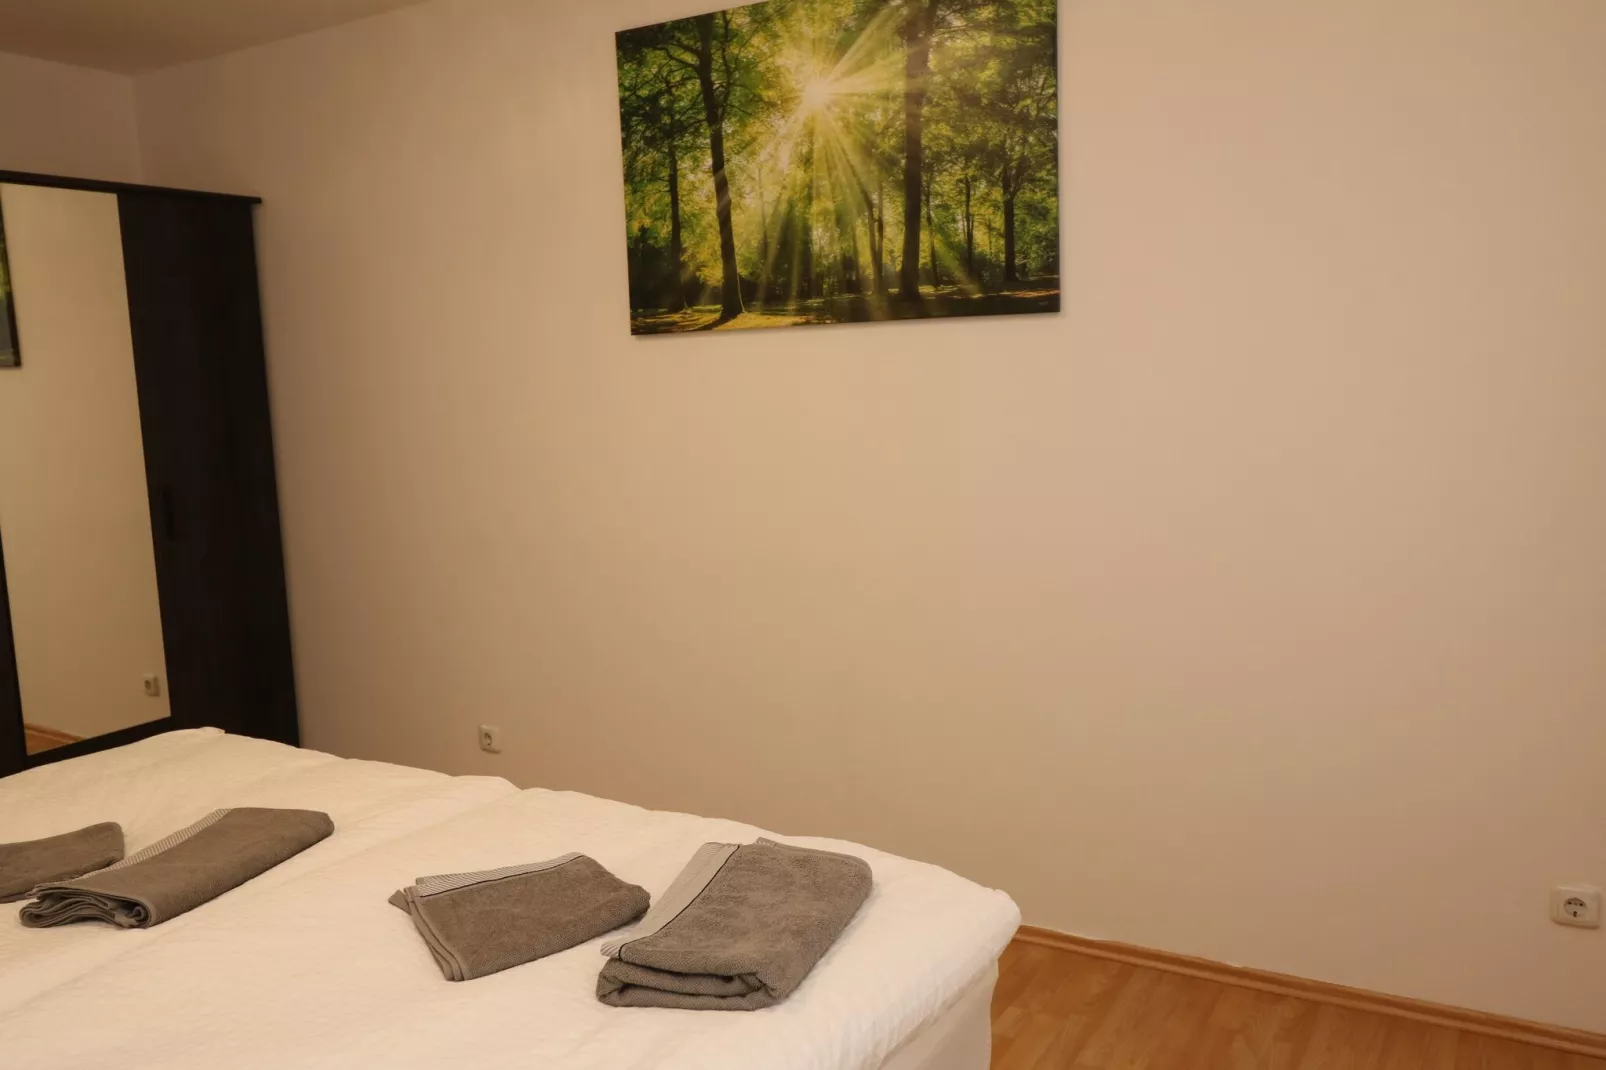 Apartment in Messenähe Essen und DD-Slaapkamer